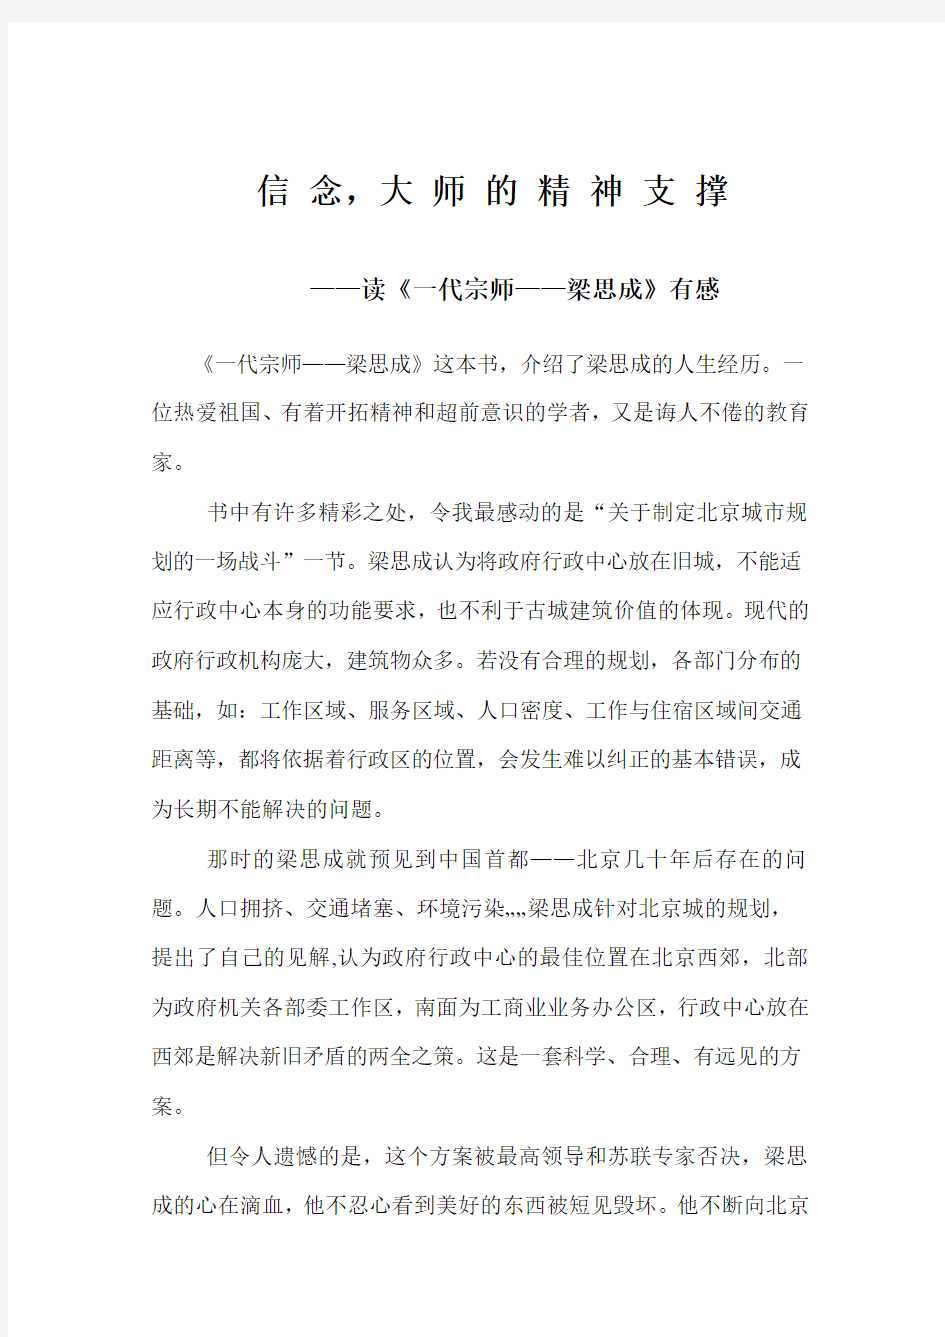 文档 1  气 节, 中 国 的 民 族 脊 梁            ——读《一代宗师——梁思成》有感